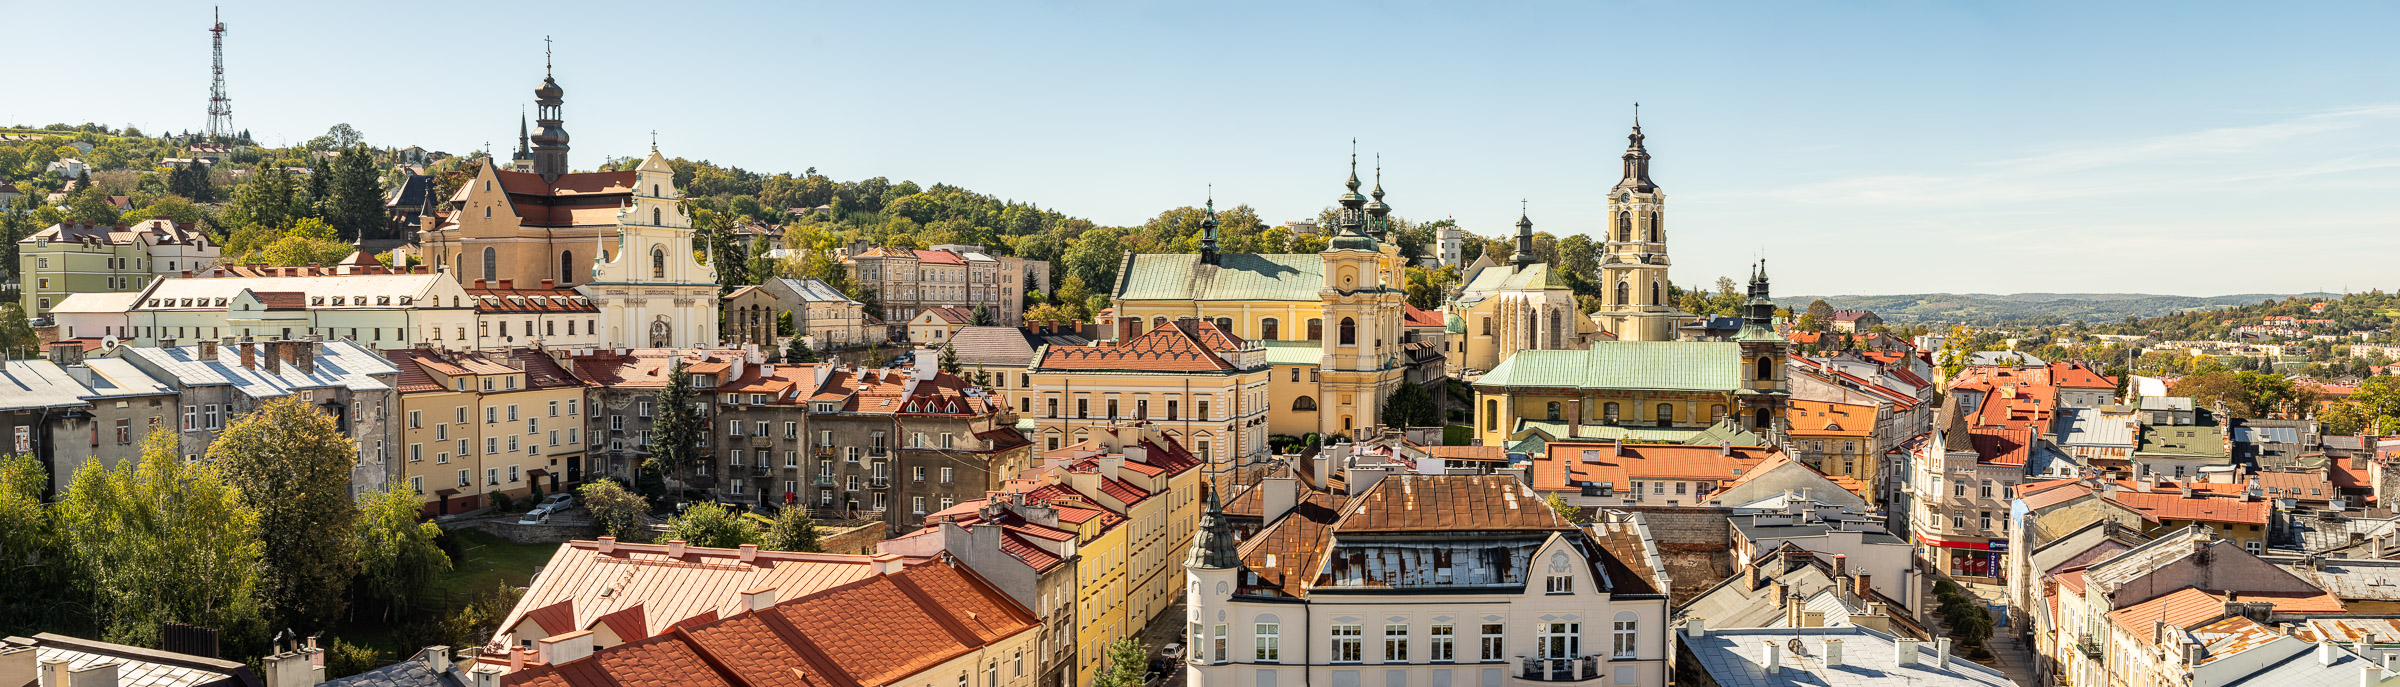 Panorama starego miasta w Przemyślu. Nad kamienicami górują wieże kościelne.